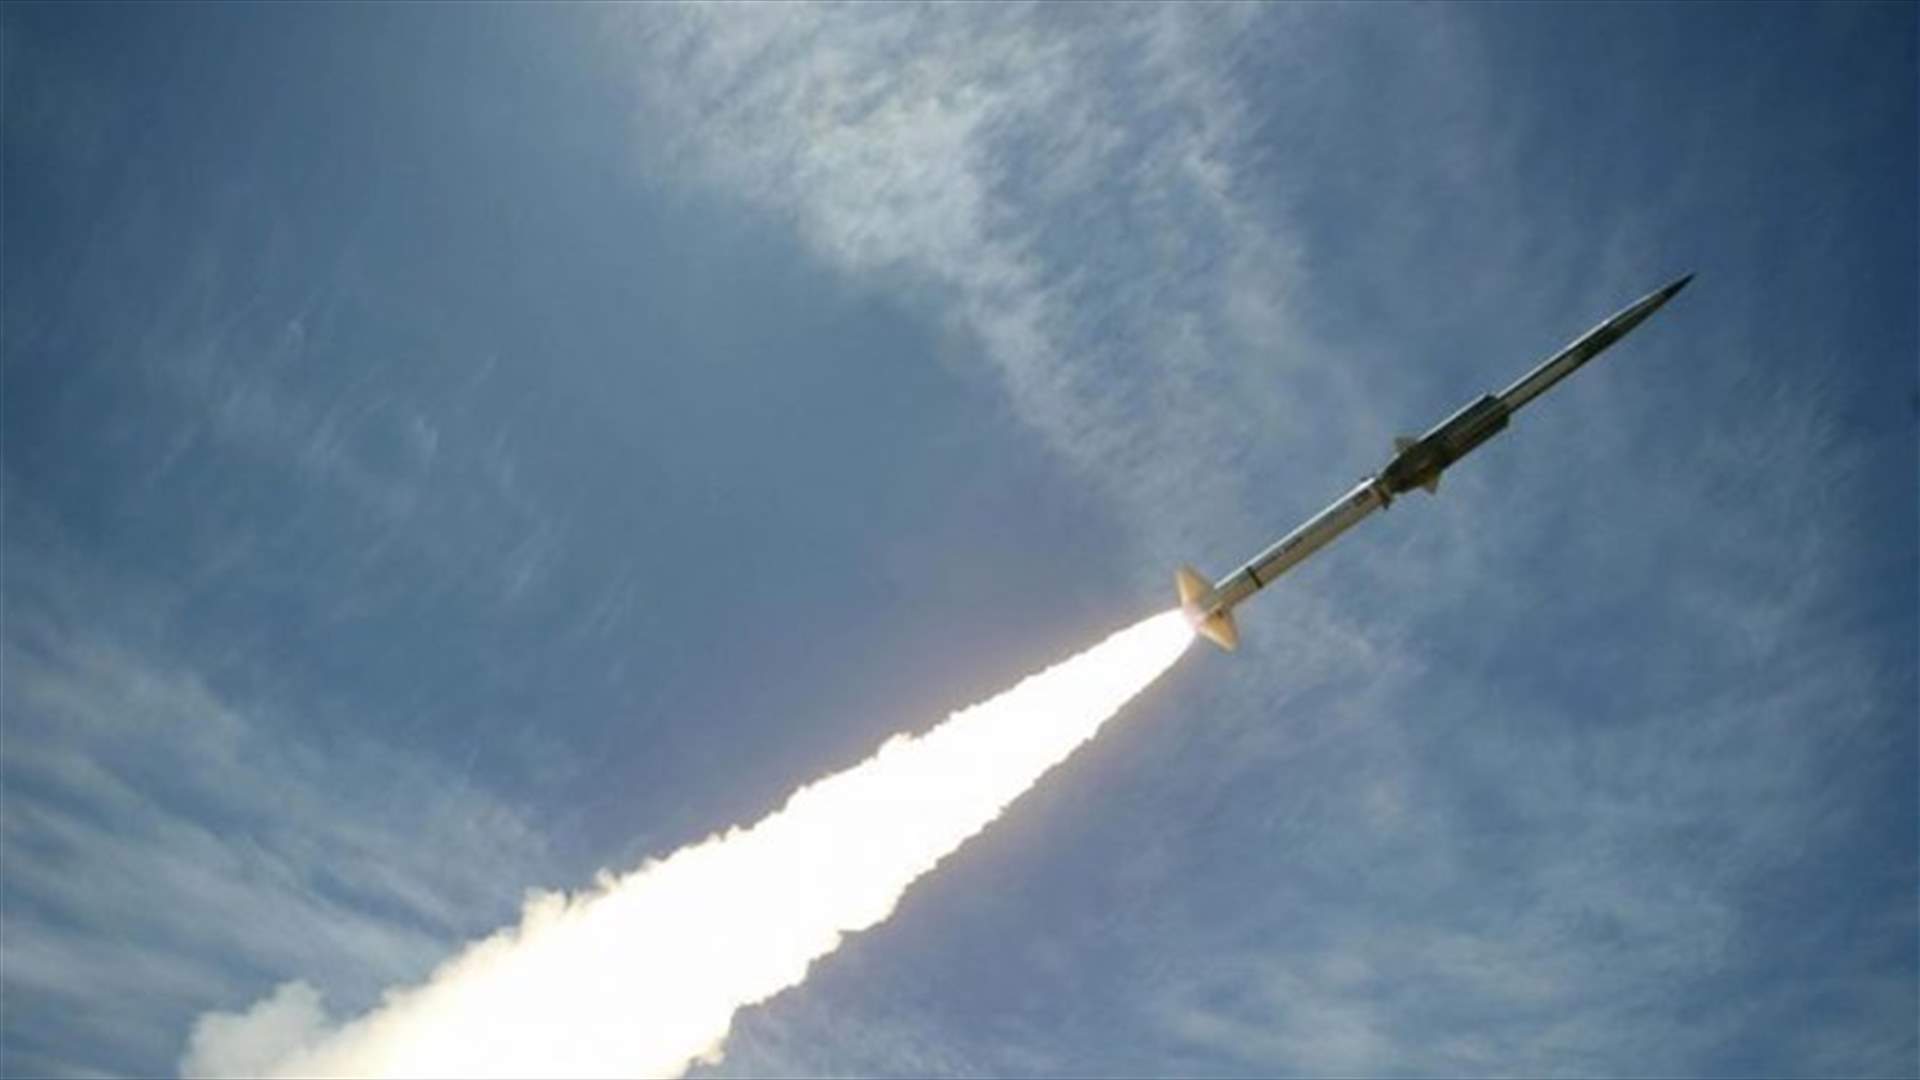 واشنطن تعلن إجراء تجربة على صاروخ تقليدي متوسط المدى